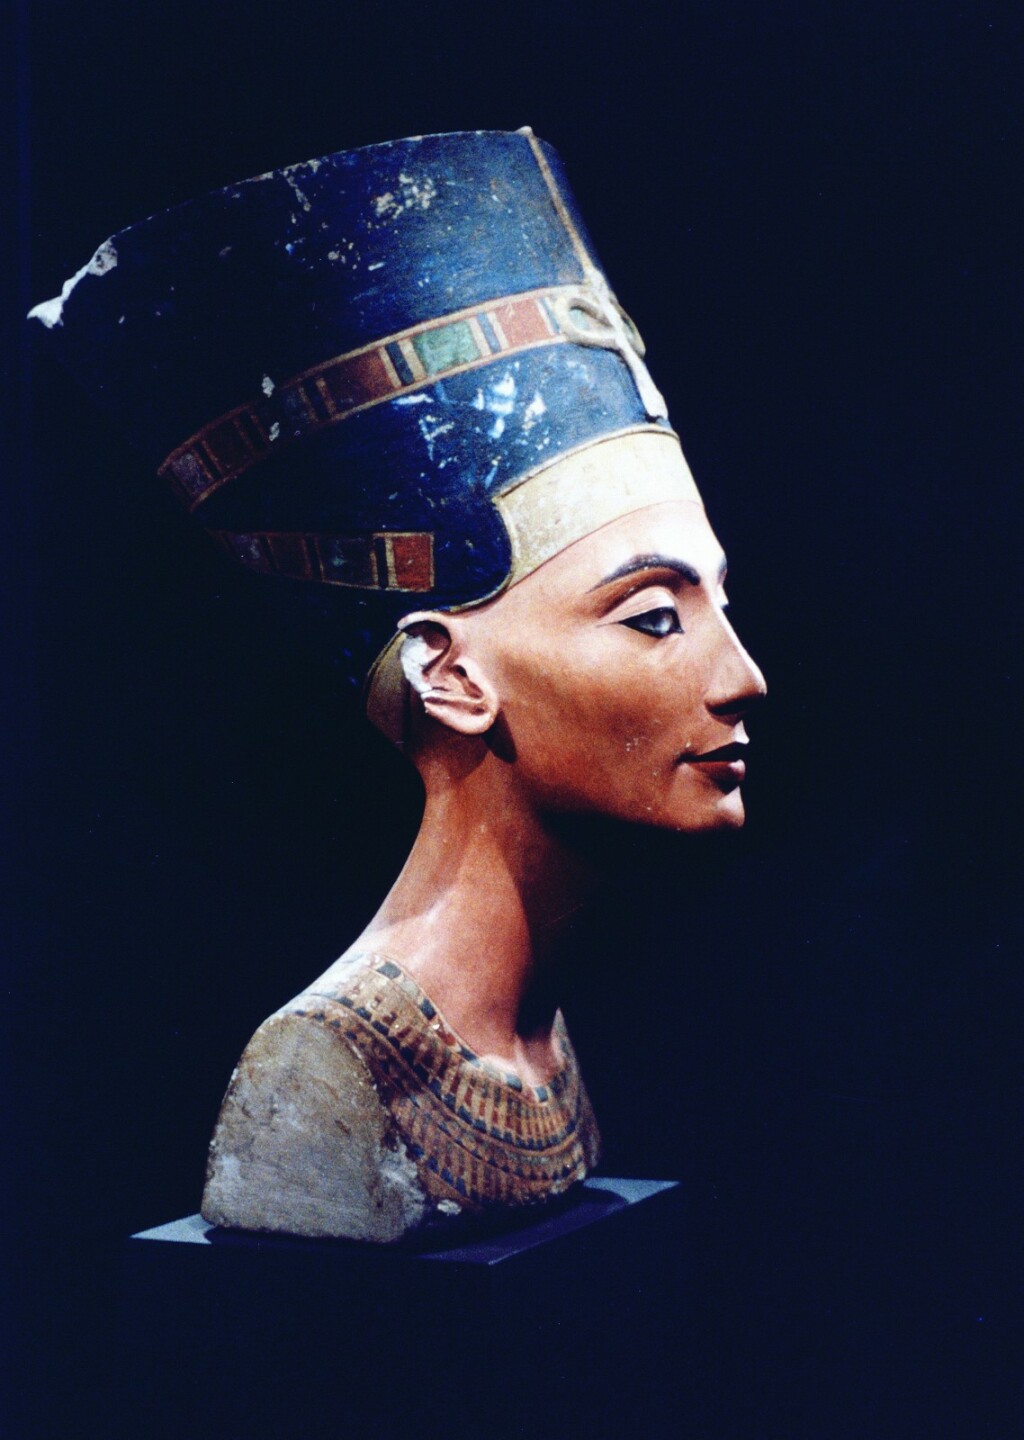 Bista kraljice Nefertiti